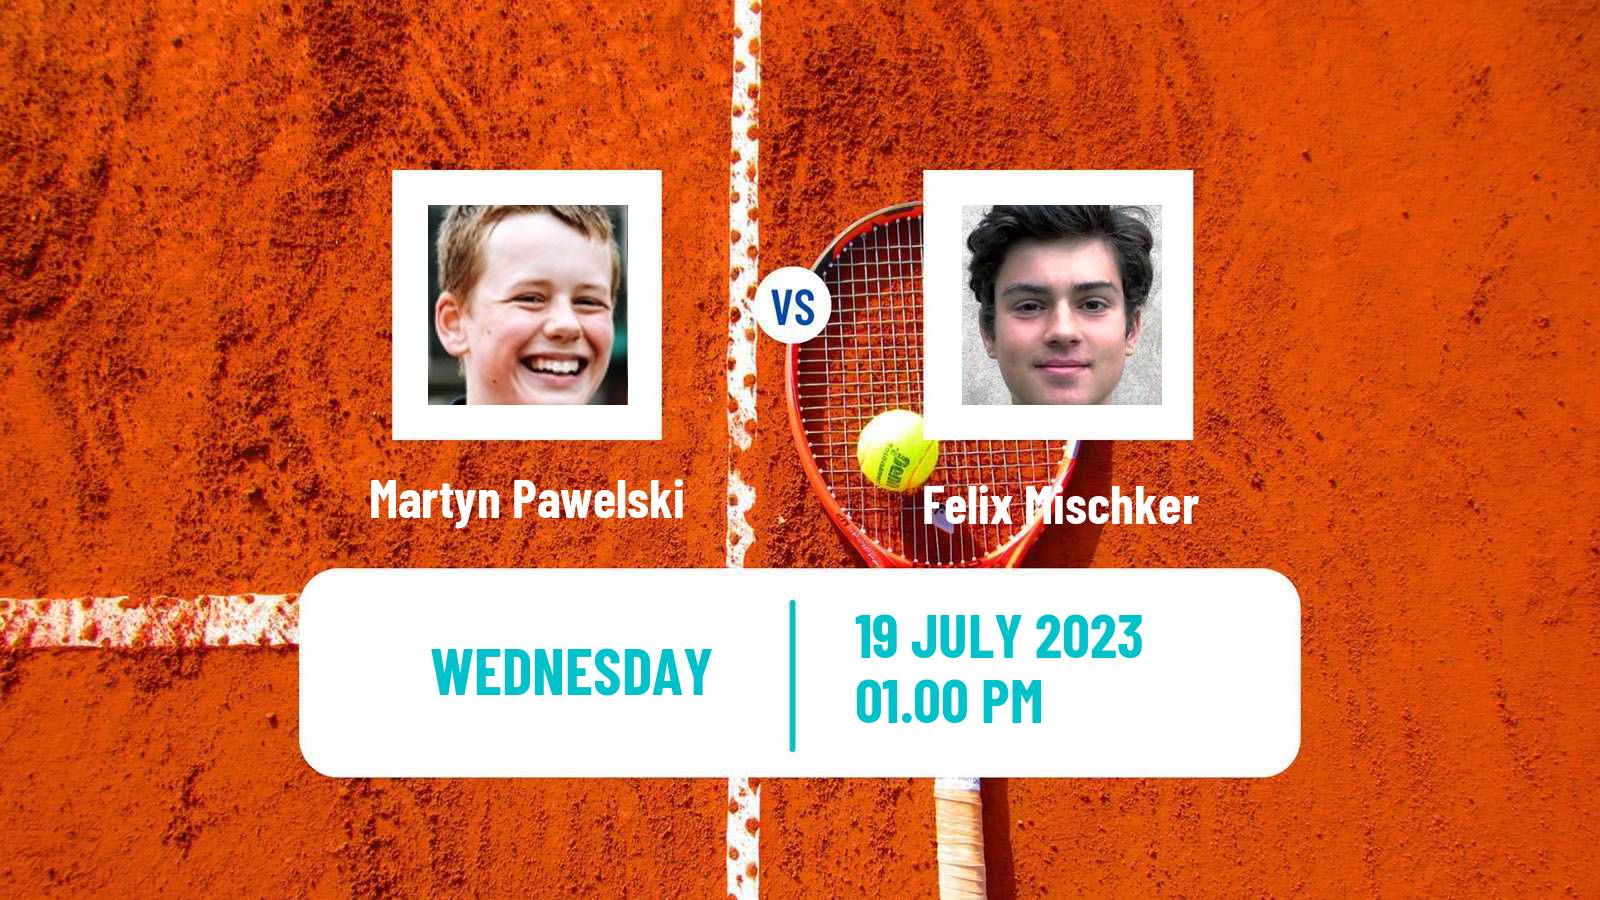 Tennis ITF M25 Castelo Branco Men Martyn Pawelski - Felix Mischker